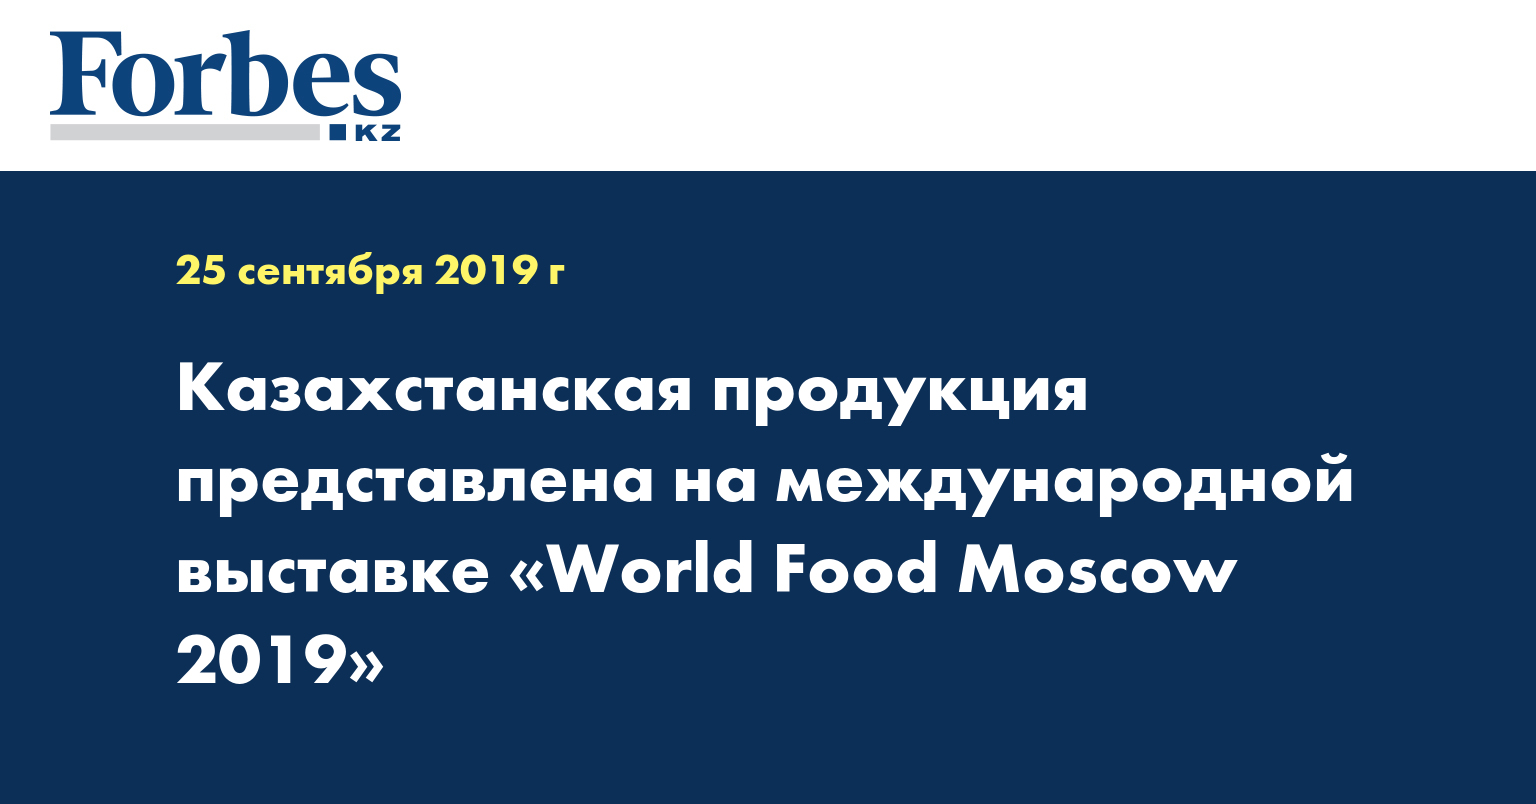 Казахстанская продукция представлена на международной выставке «World Food Moscow 2019»